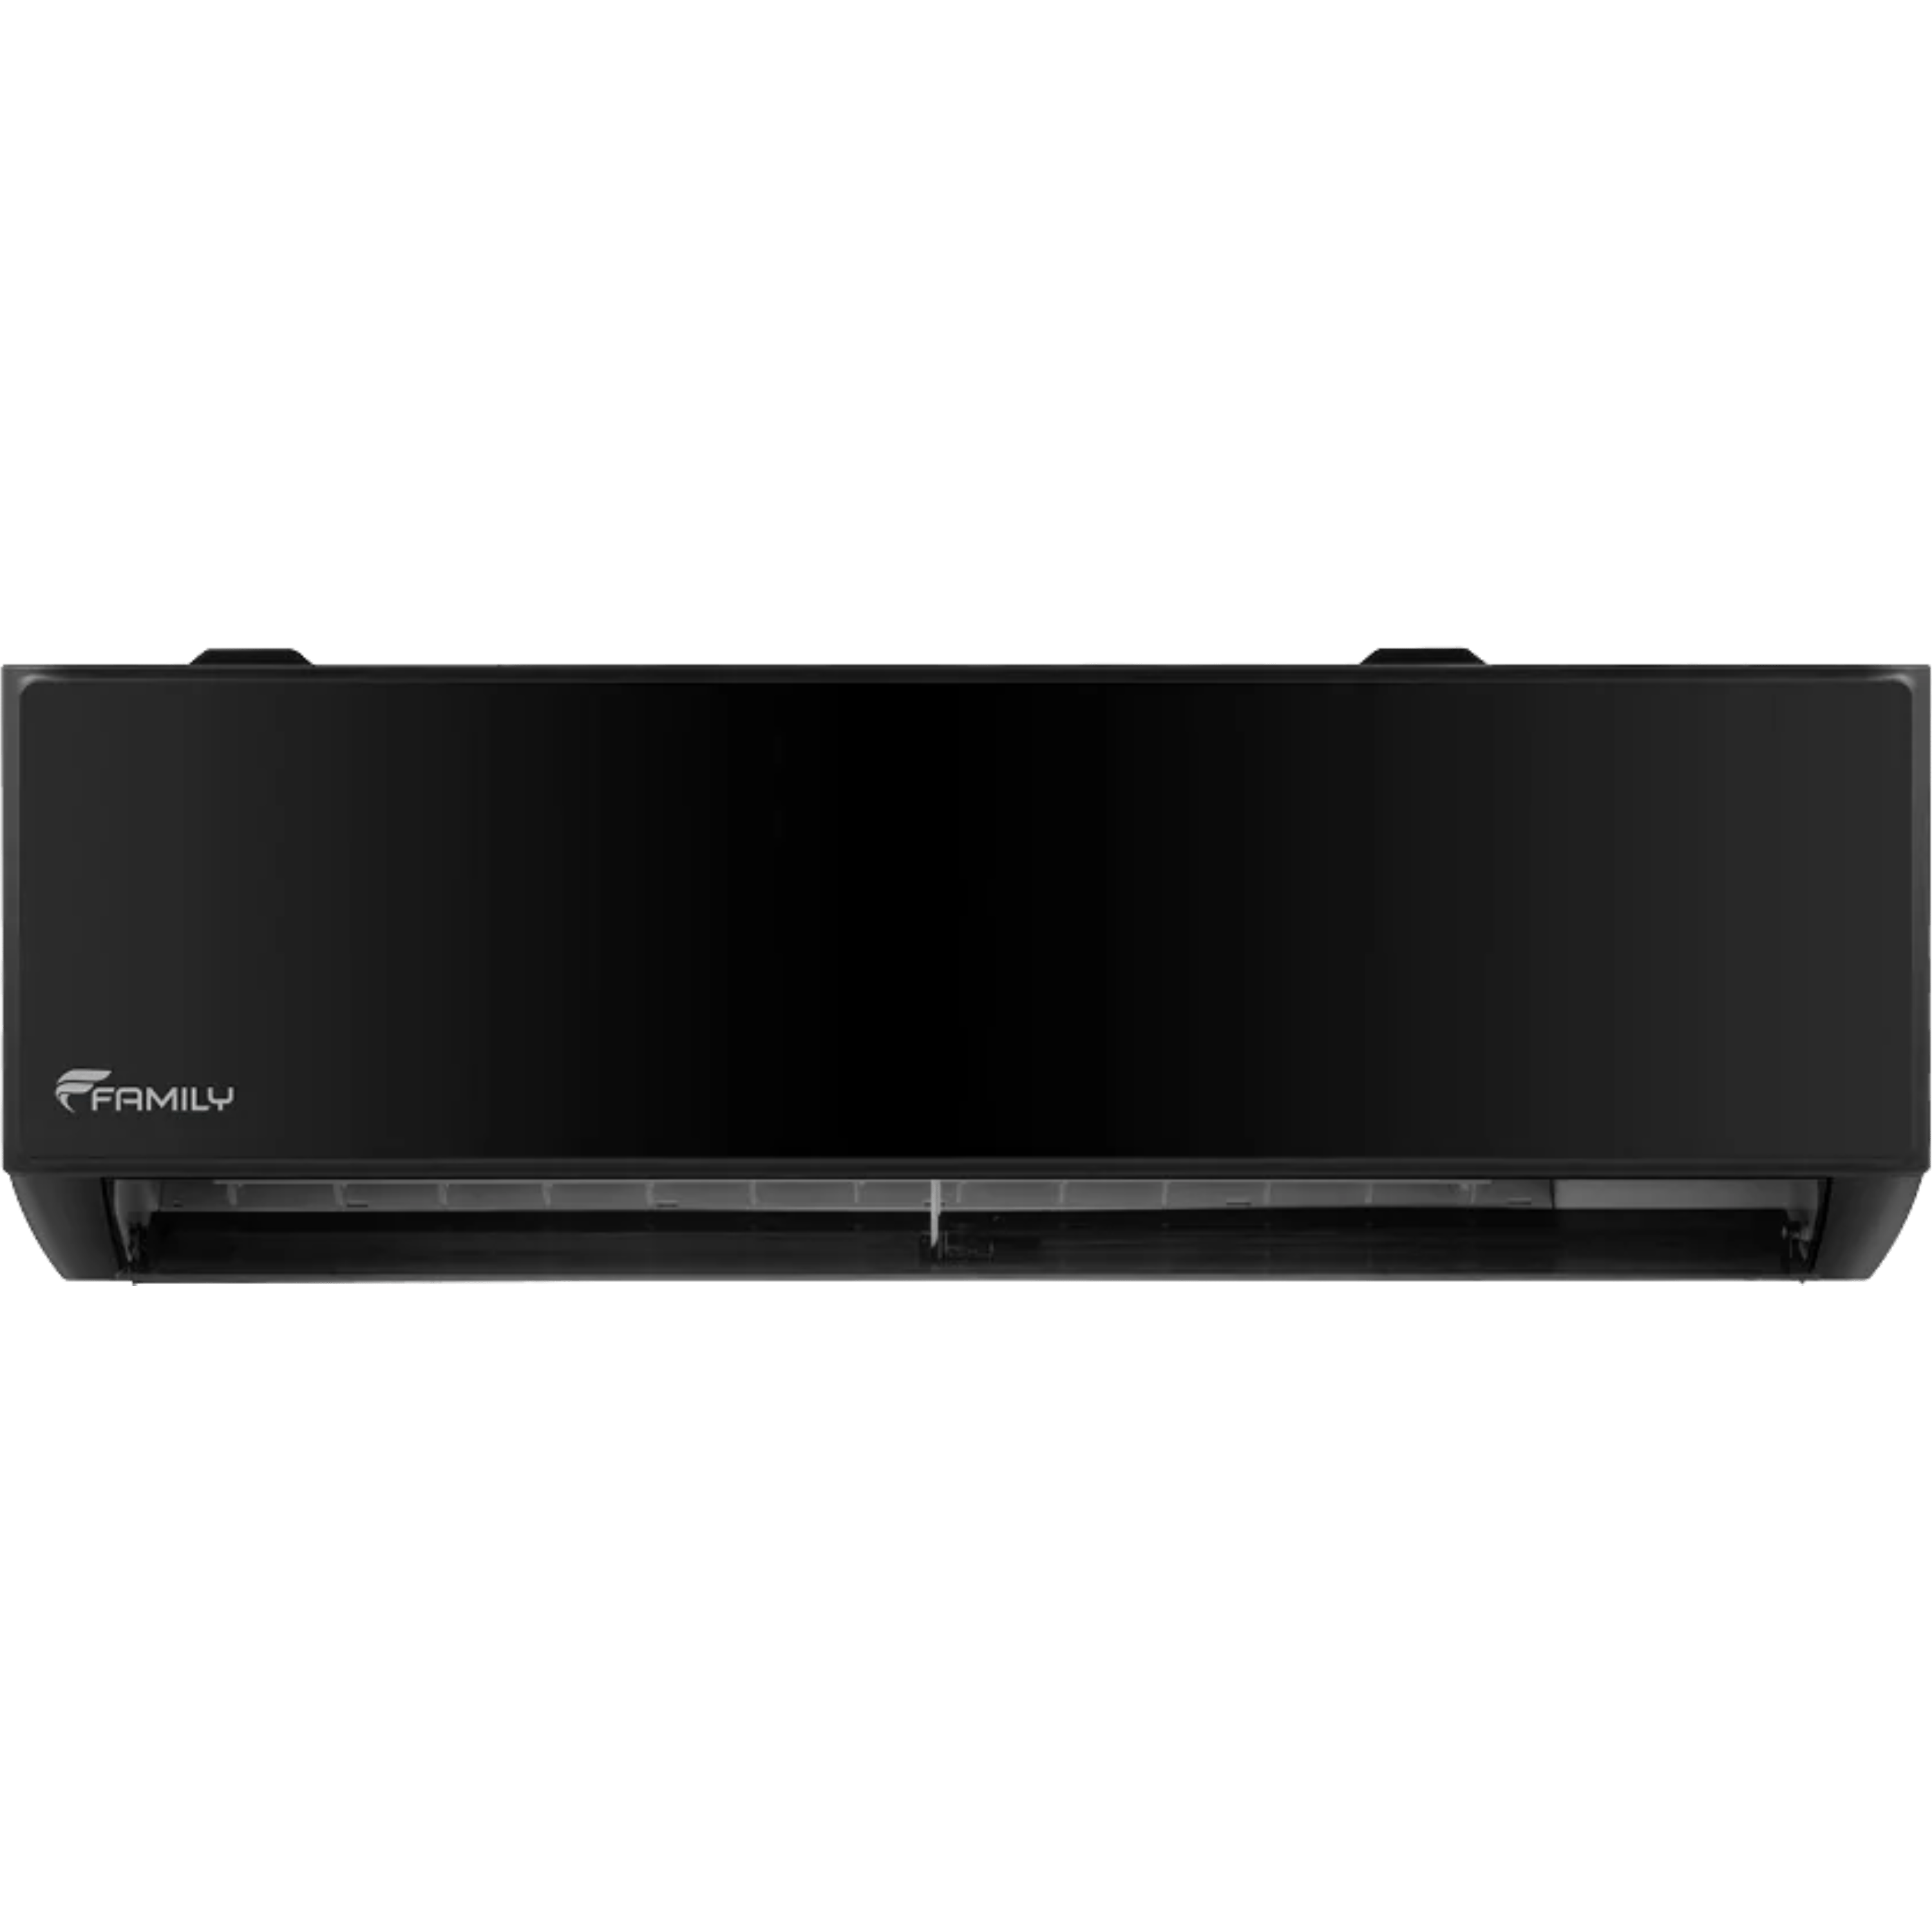 מזגן עילי Family Premium Black inverter WiFi 32 - צבע שחור שבע שנות אחריות ע